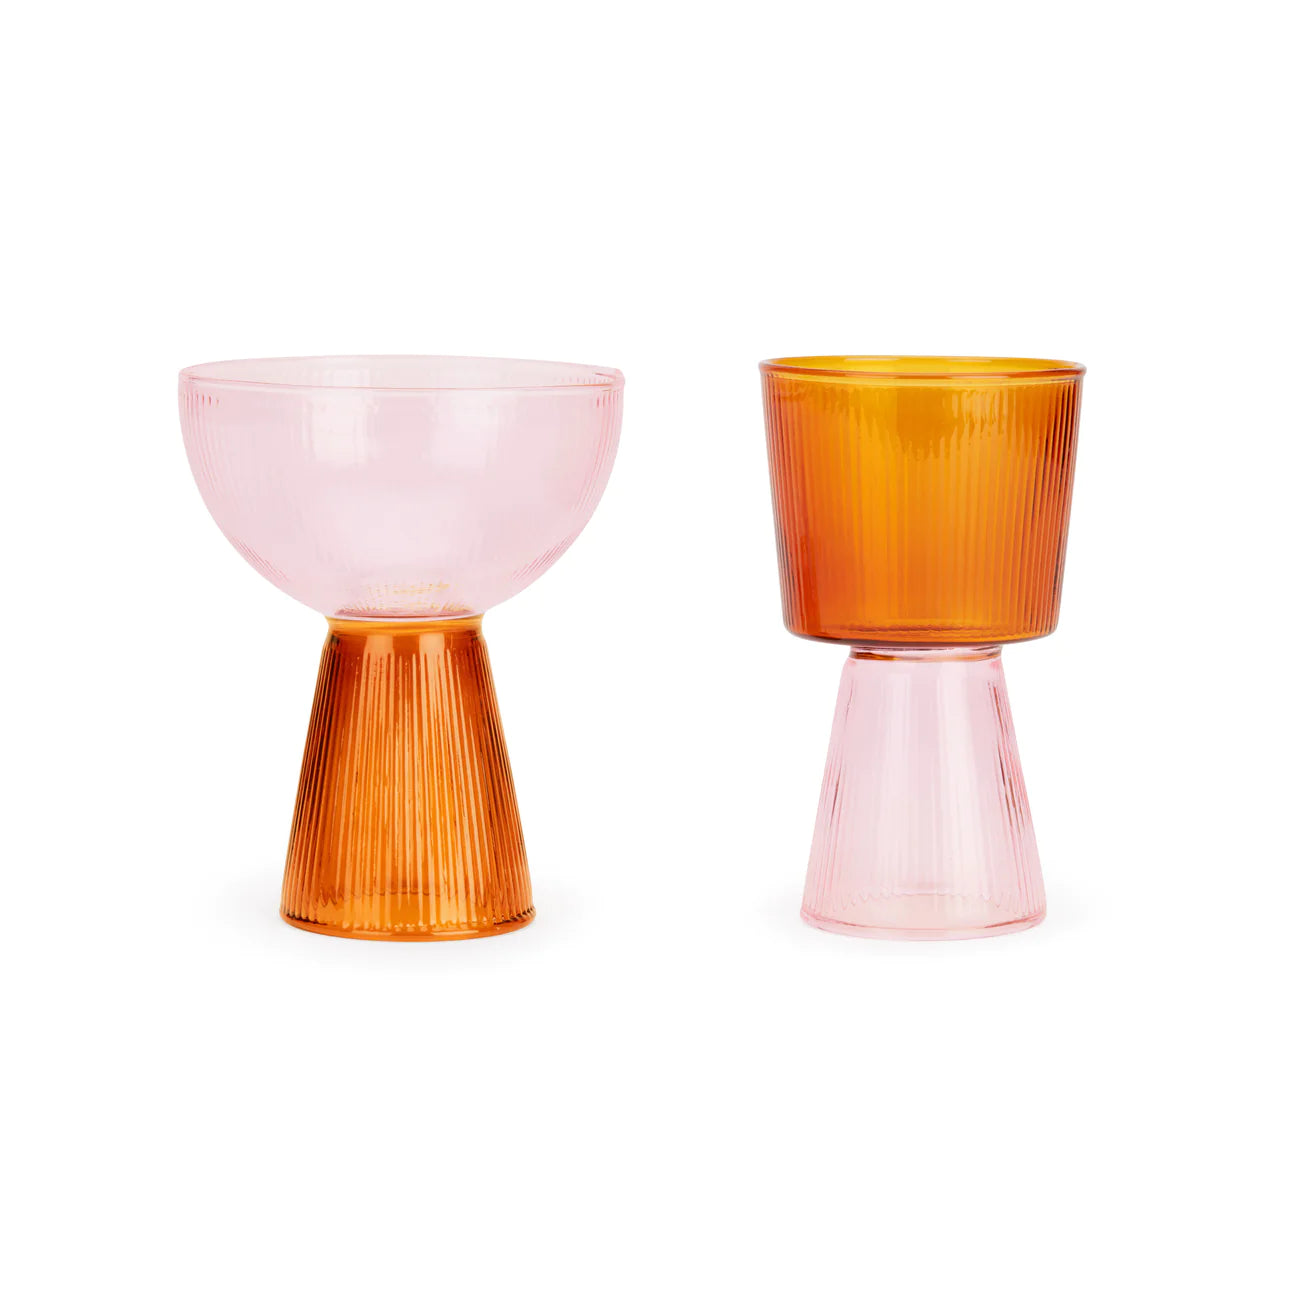 Oorun Didun Glass Cup Set - Yinka Ilori for Moma glassware moma PINK/AMBER  